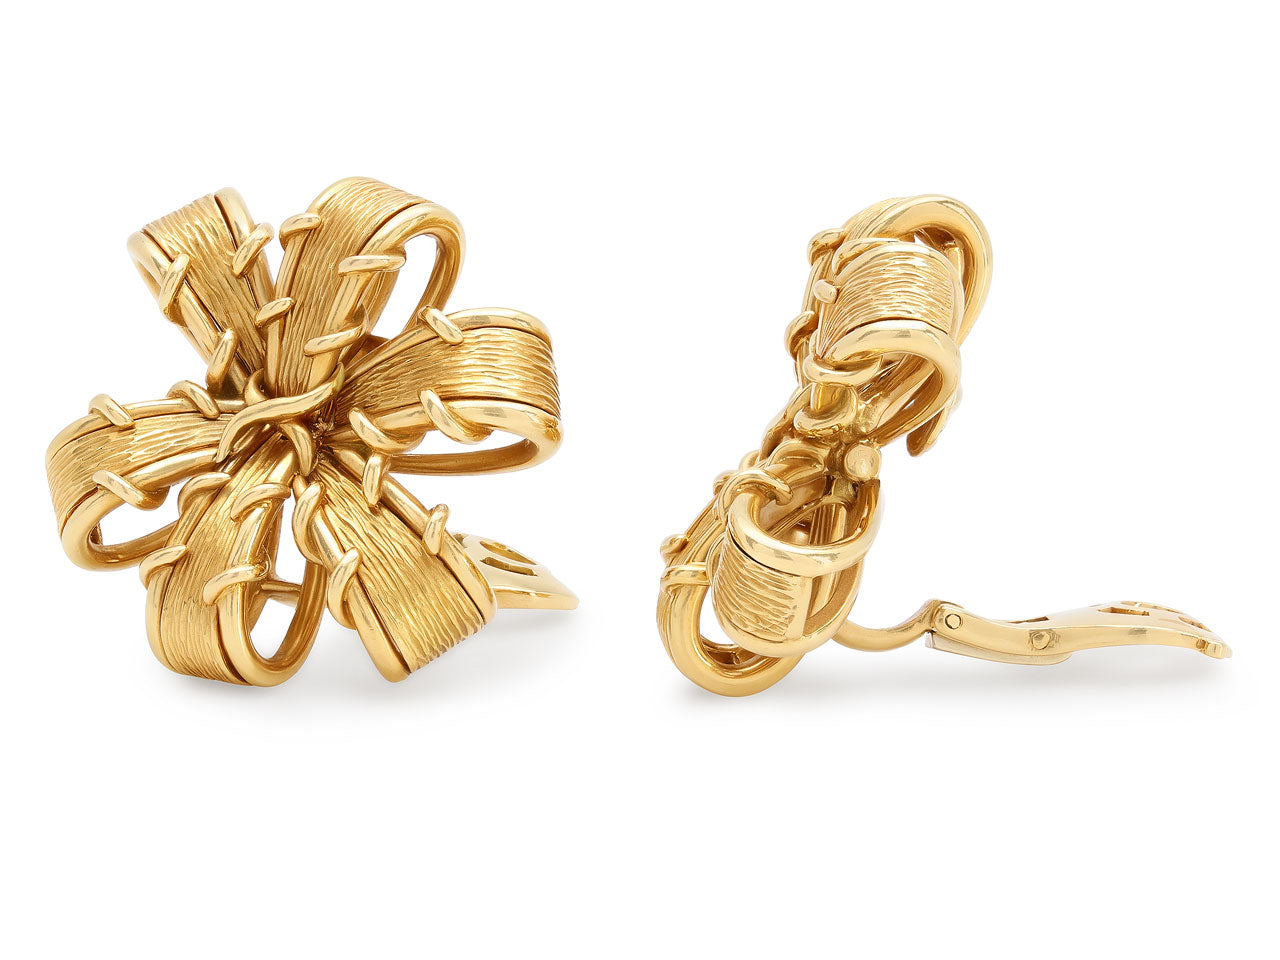 Tiffany & Co. Schlumberger Ribbon Earrings in 18K Gold